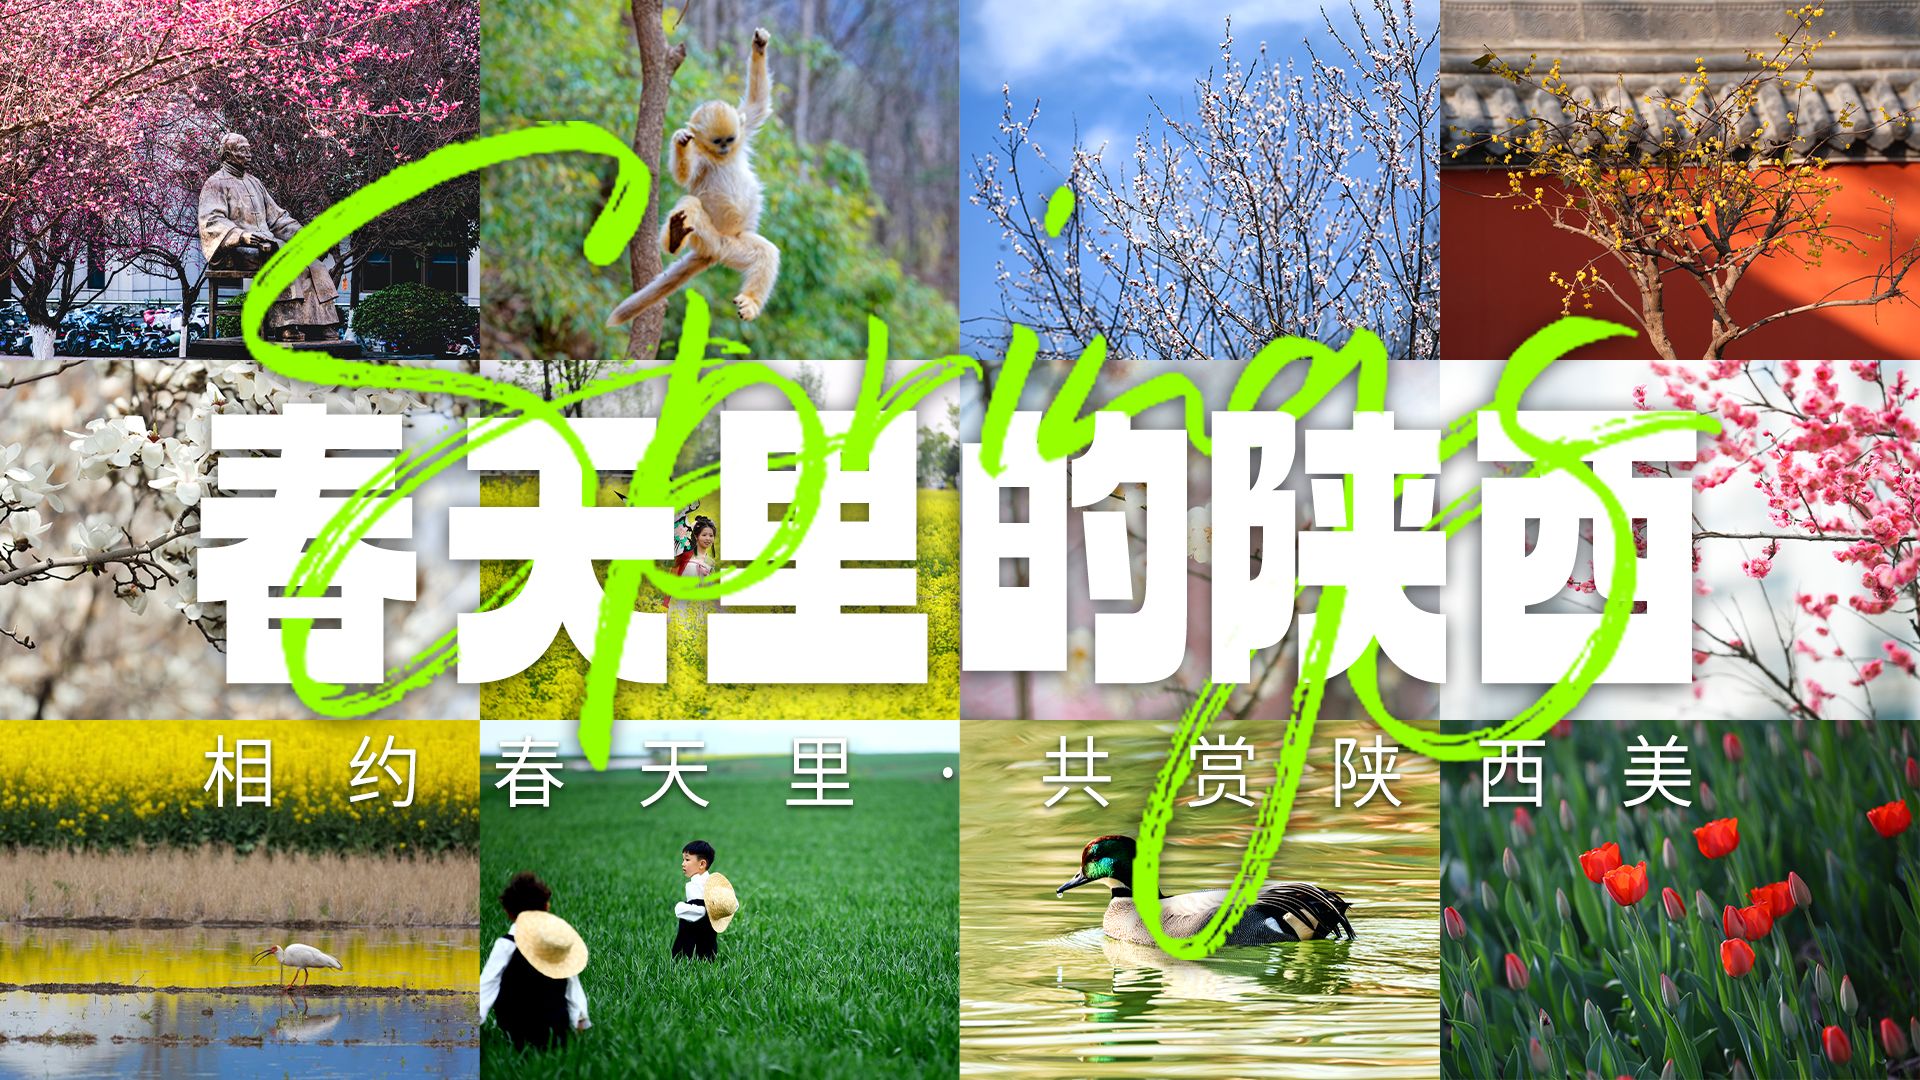 用镜头定格三秦大地最美春色  “春天里的陕西”线上影展明年再见！